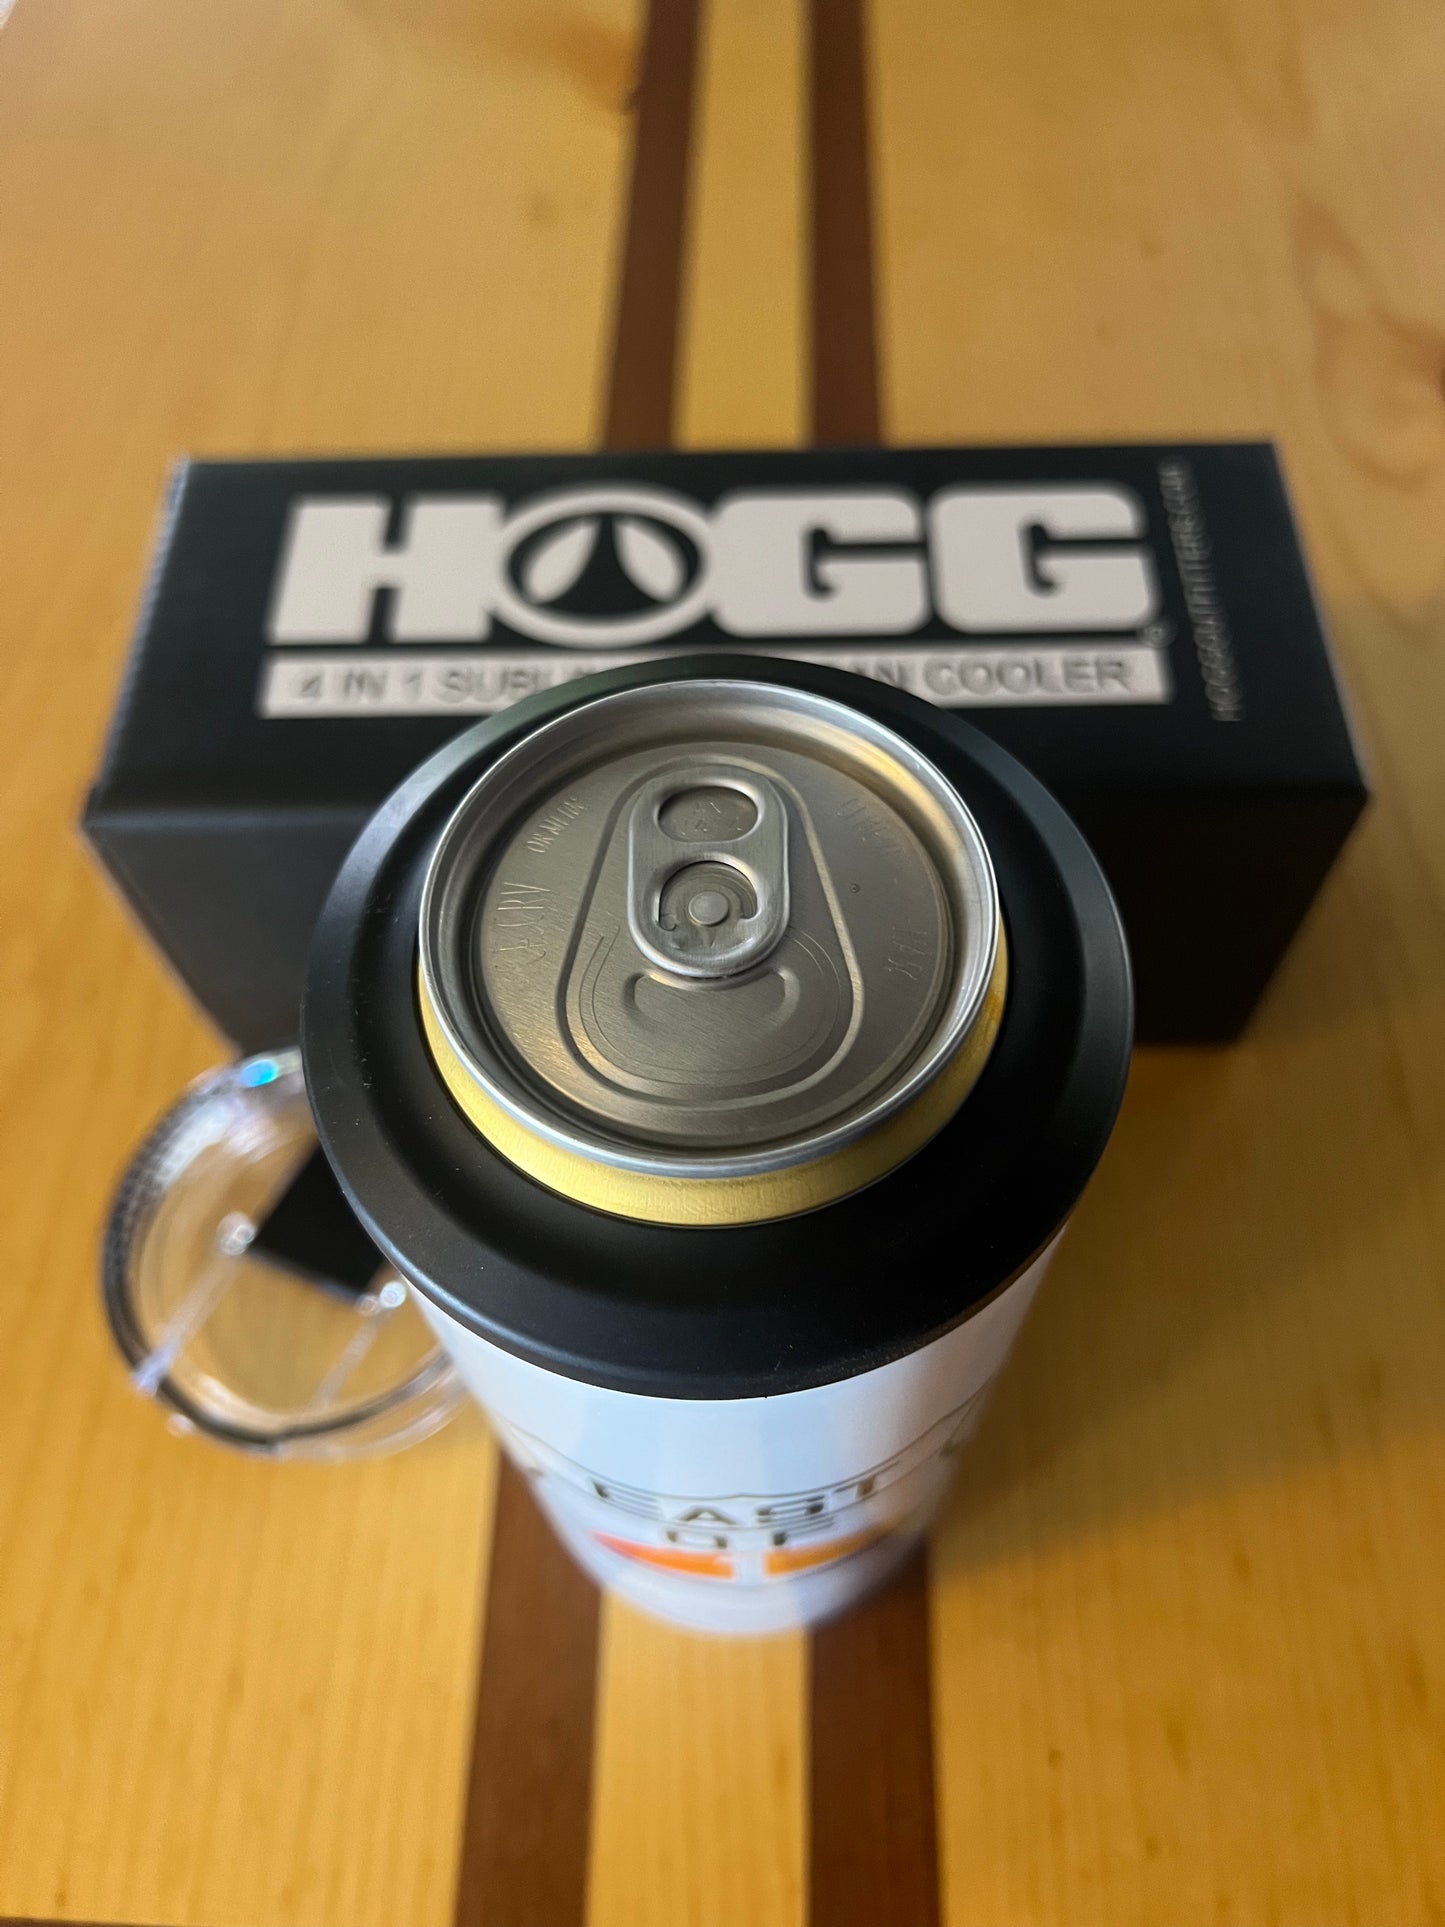 Hogg 4-1 Can Cooler